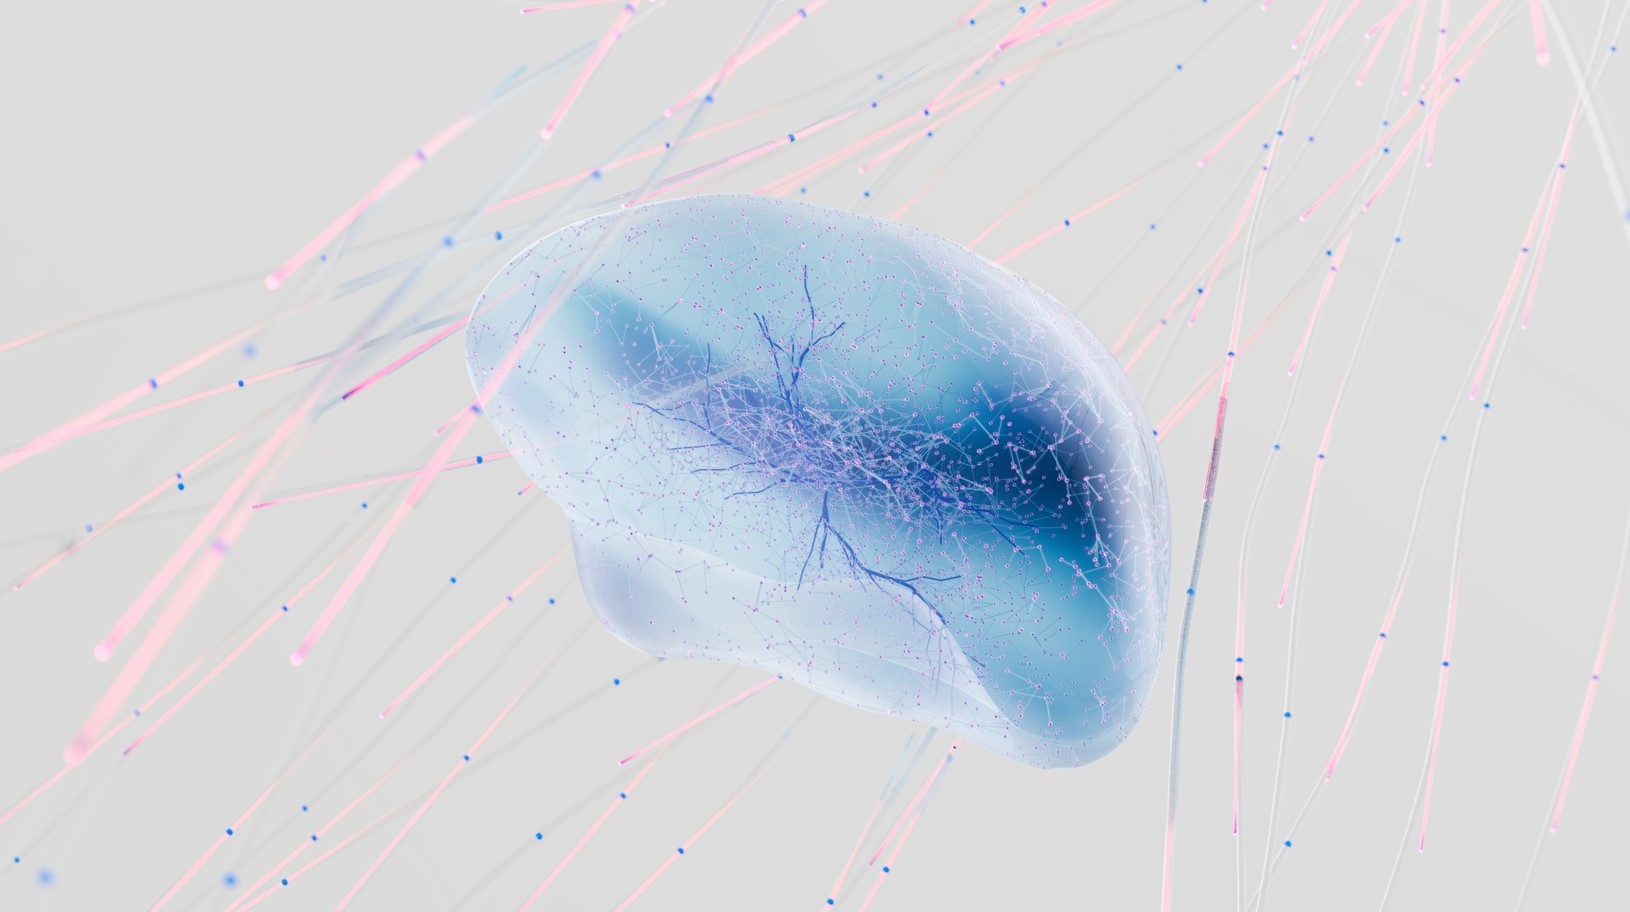 L'anàlisi de xarxes biològiques permet entendre la complexitat de l'esclerosi múltiple